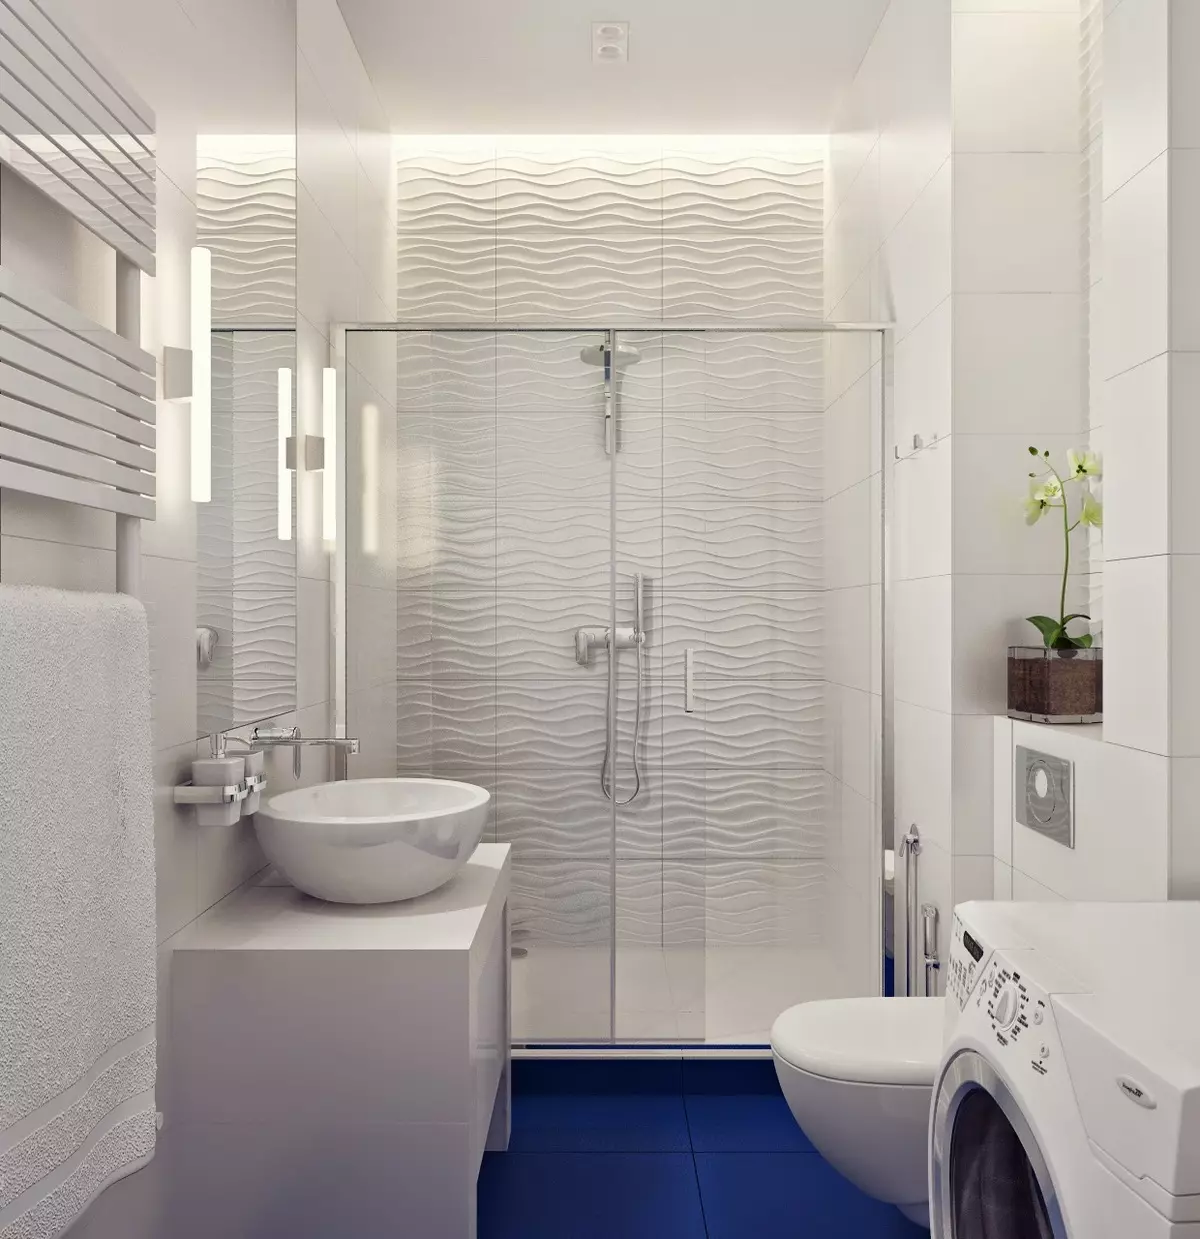 Salle de bain blanche (84 photos): design de chambre dans des tons blancs avec des accents lumineux. Idées de design d'intérieur modernes Petite salle de bain blanche avec inserts 10191_44